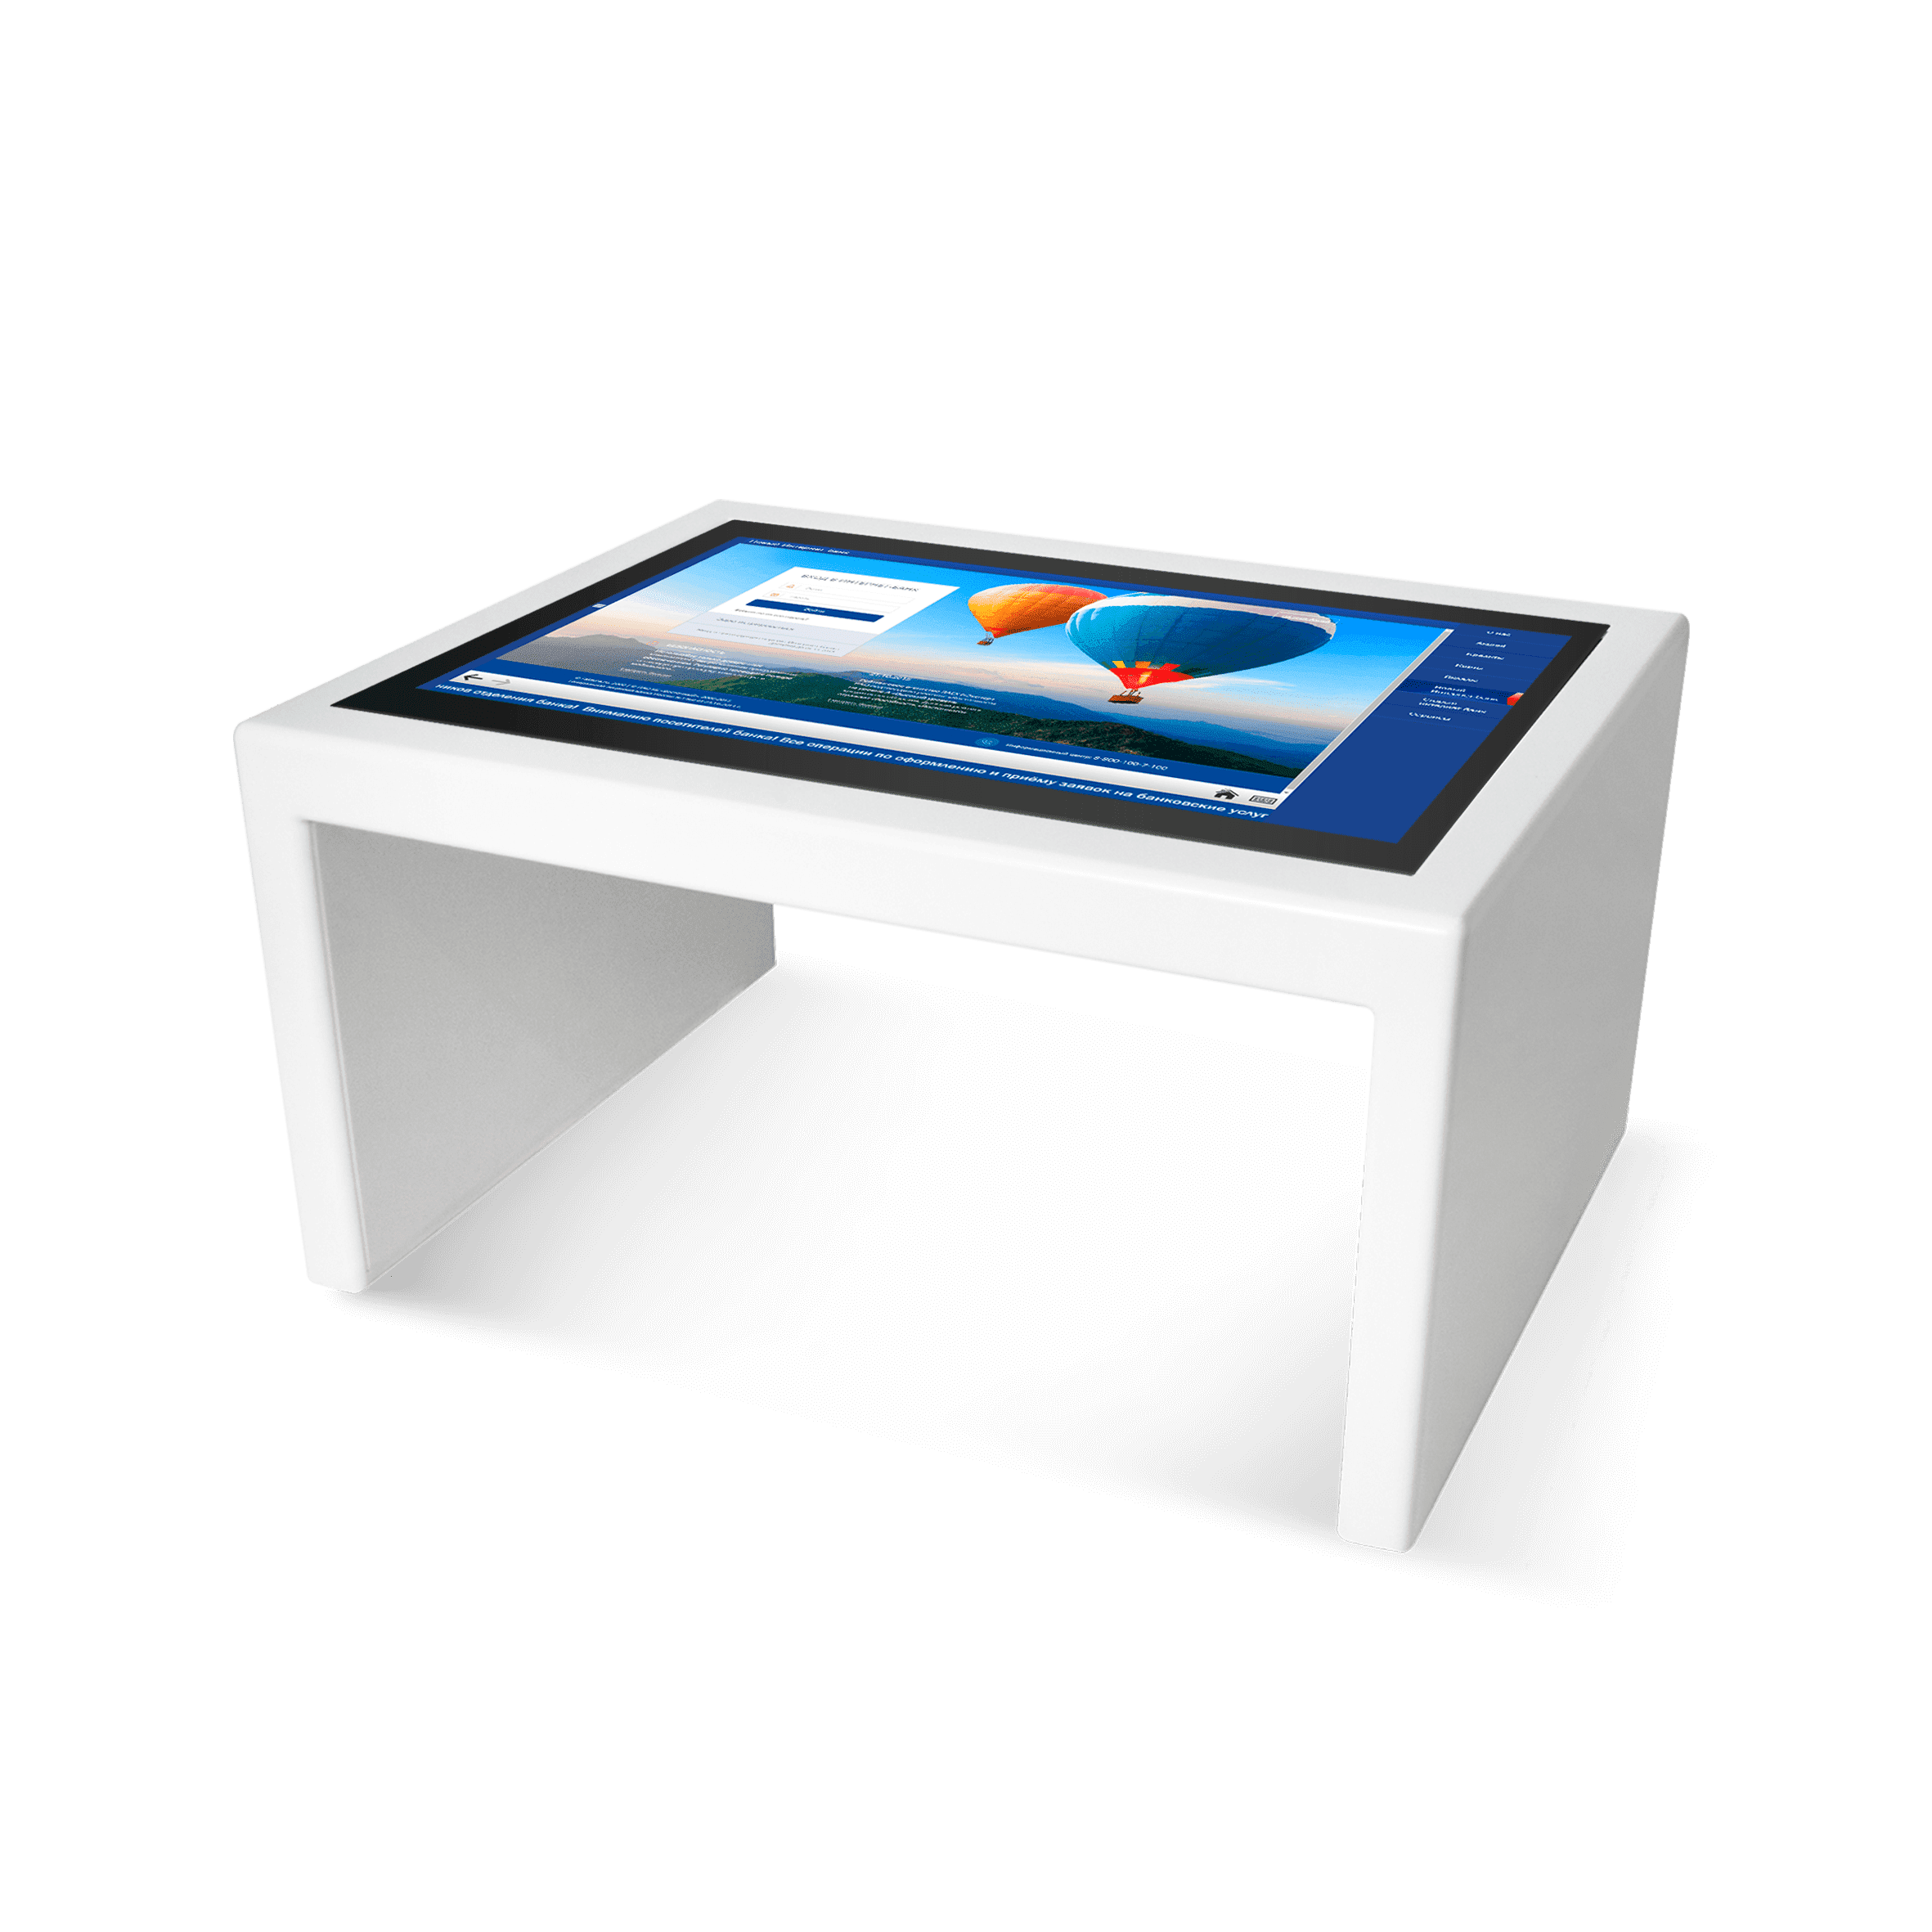 Интерактивный стол STM-T-21504. NEXTABLE 55p. Интерактивные столы NEXTABLE V. Интерактивный стол Dedal Uniq 43,. Интерактивный стол функции